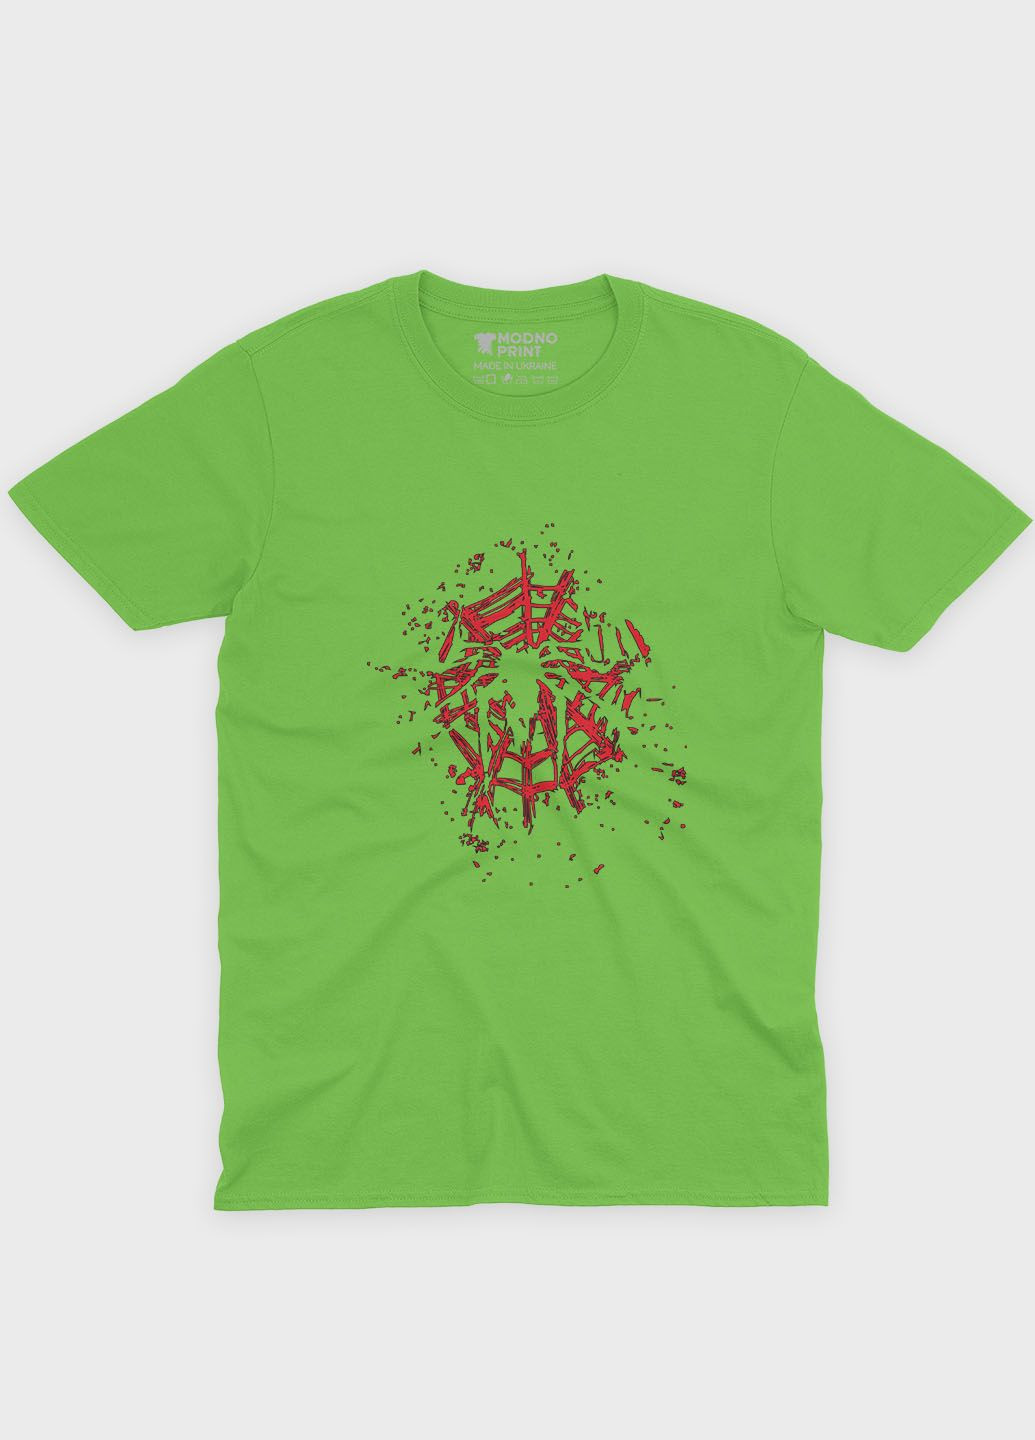 Салатова демісезонна футболка для хлопчика з принтом супергероя - людина-павук (ts001-1-kiw-006-014-003-b) Modno